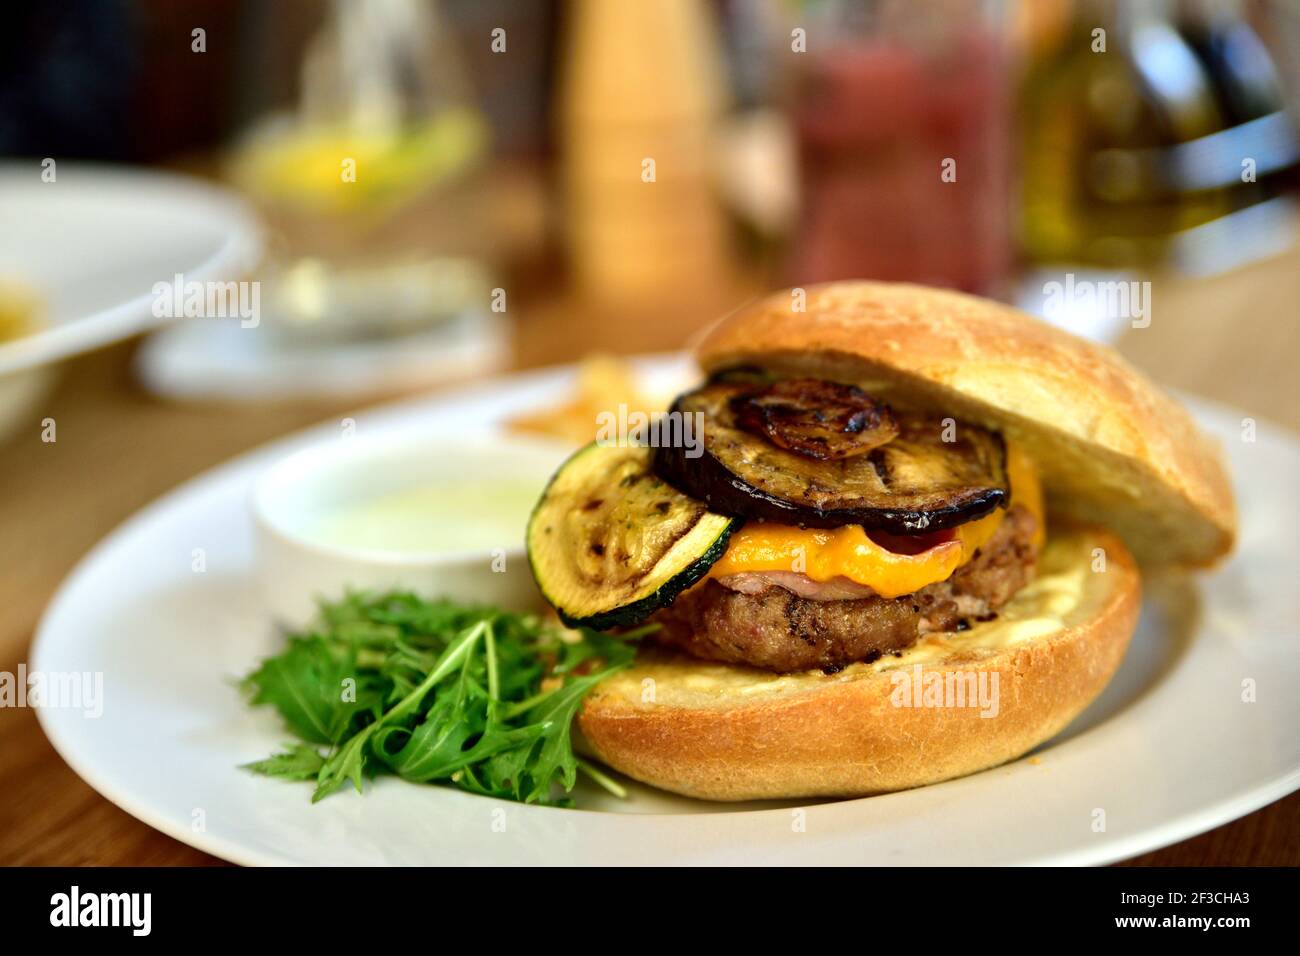 Cibo da ristorante con ingredienti freschi - hamburger con formaggio cheddar, zucchine, fette di patate e salsa tartara Foto Stock